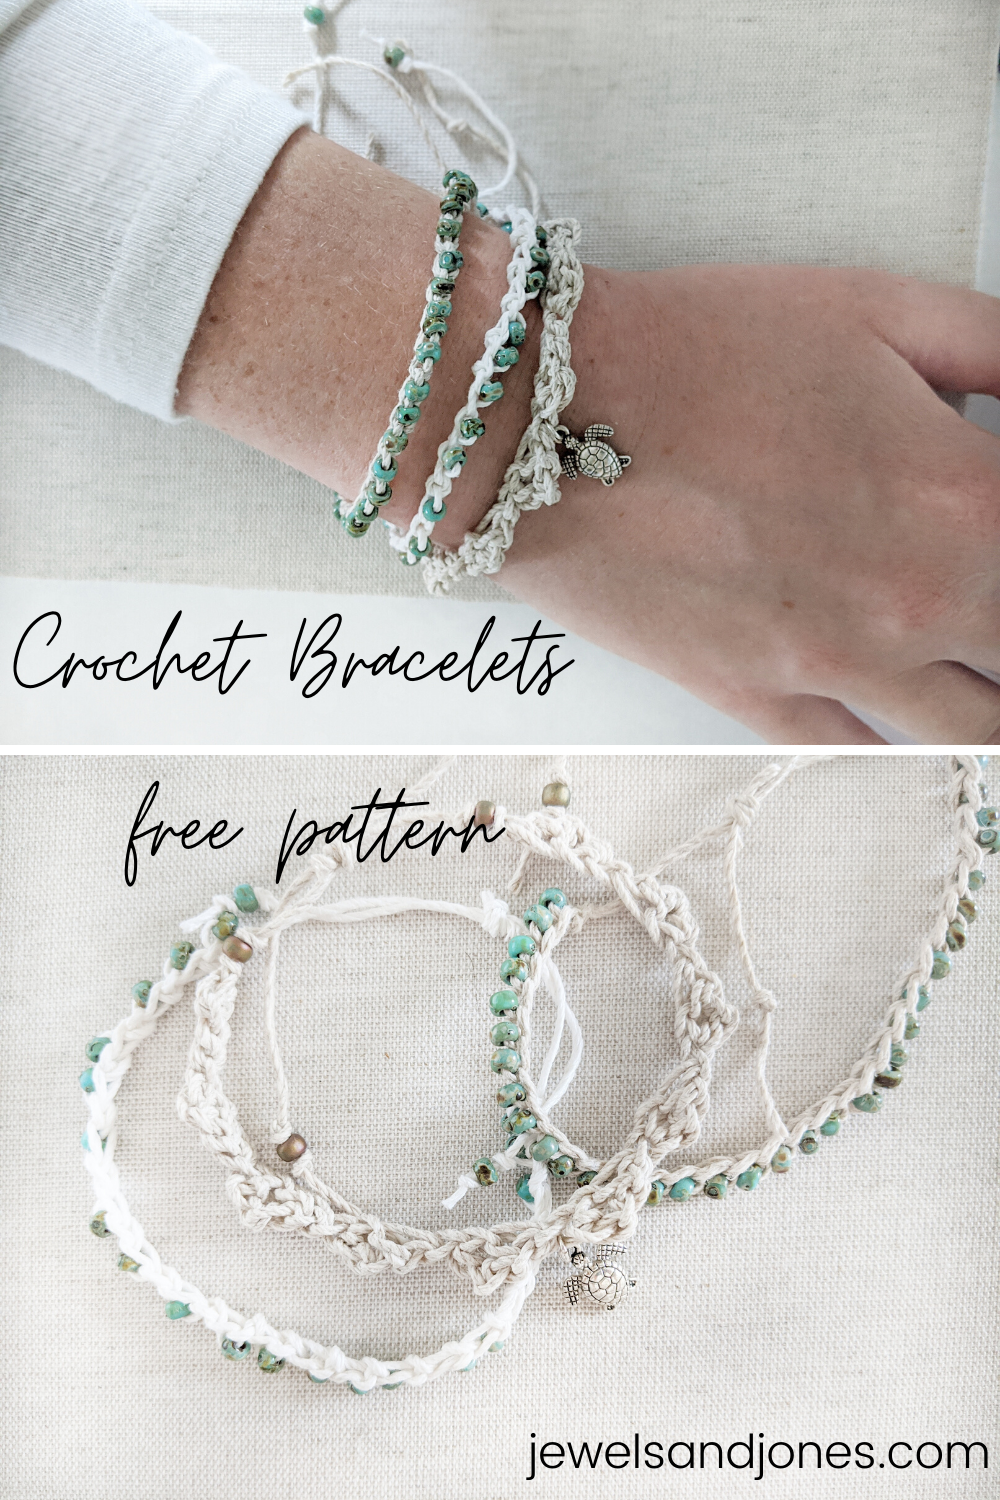 20 Free Crochet Bracelet Patterns For Stylish But Cozy Wrist!